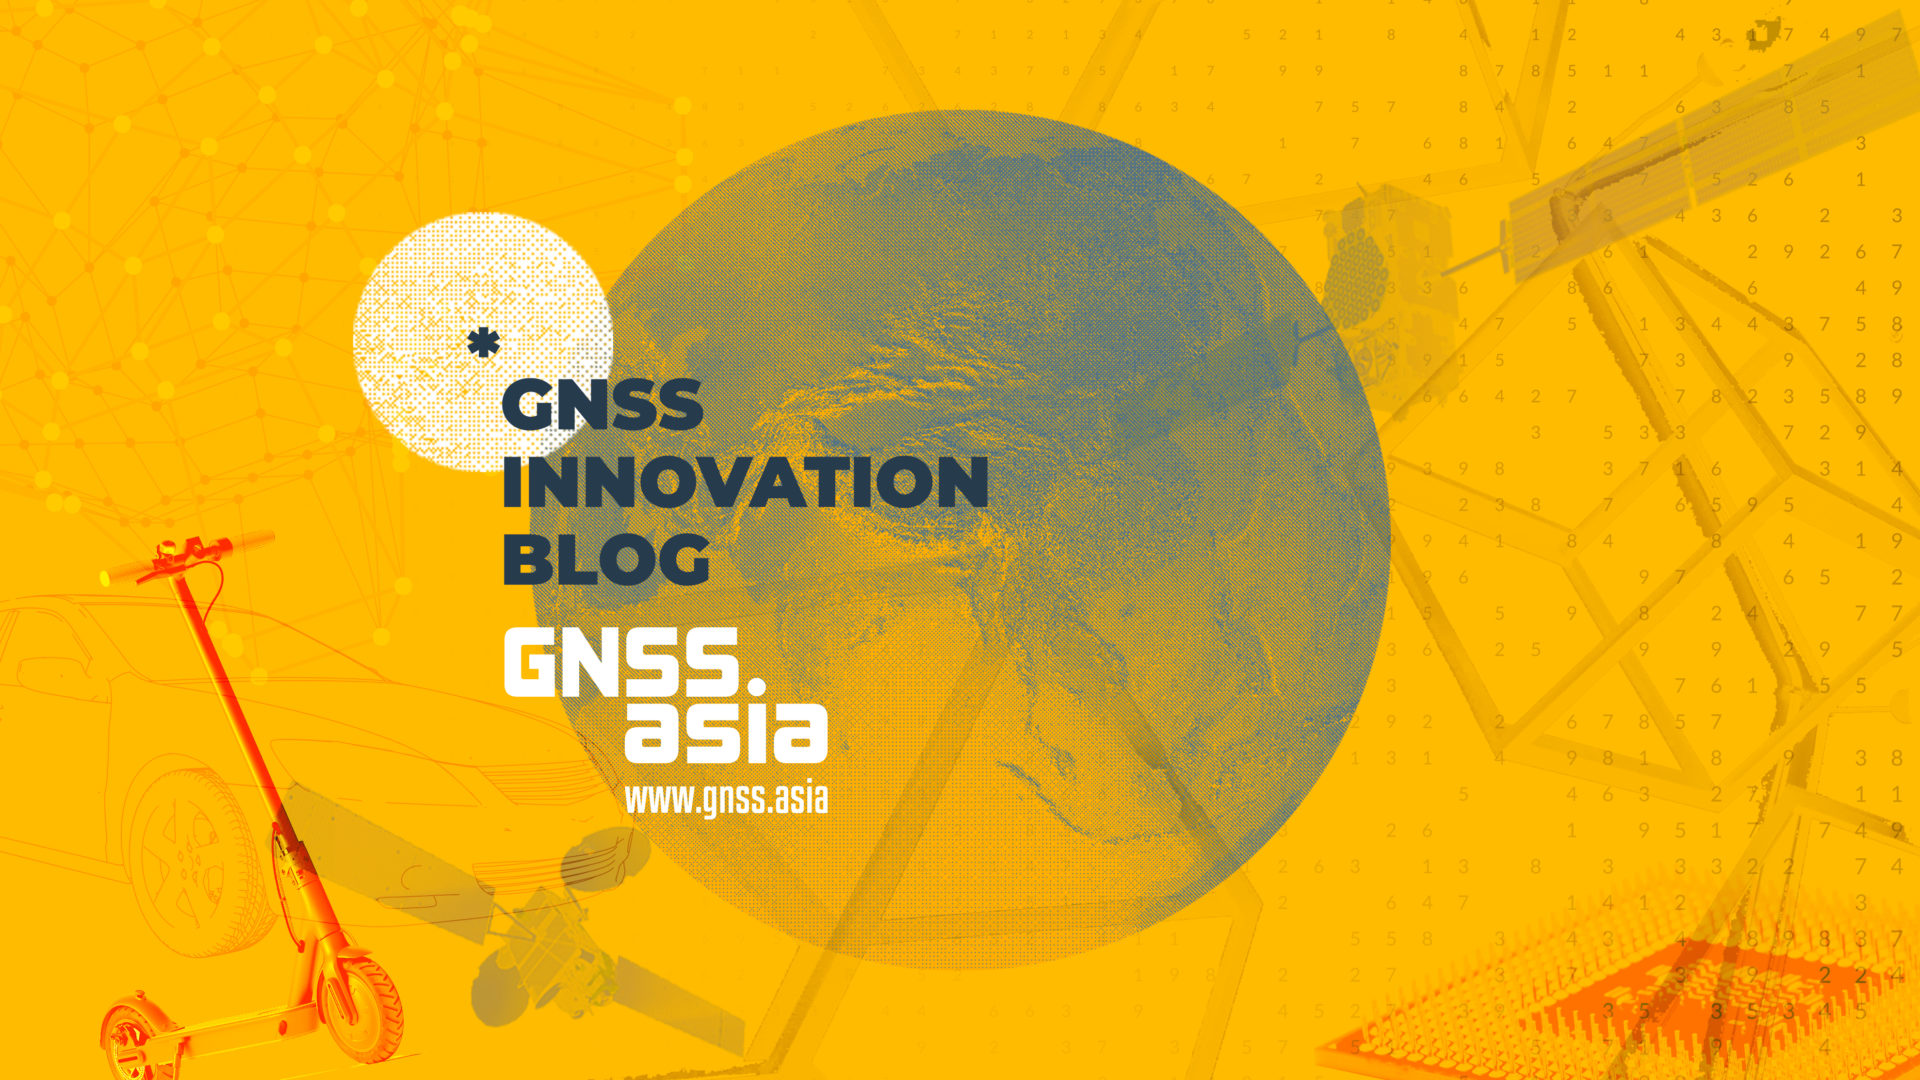 GNSS.asiaイノベーションブログが遂に始まりました